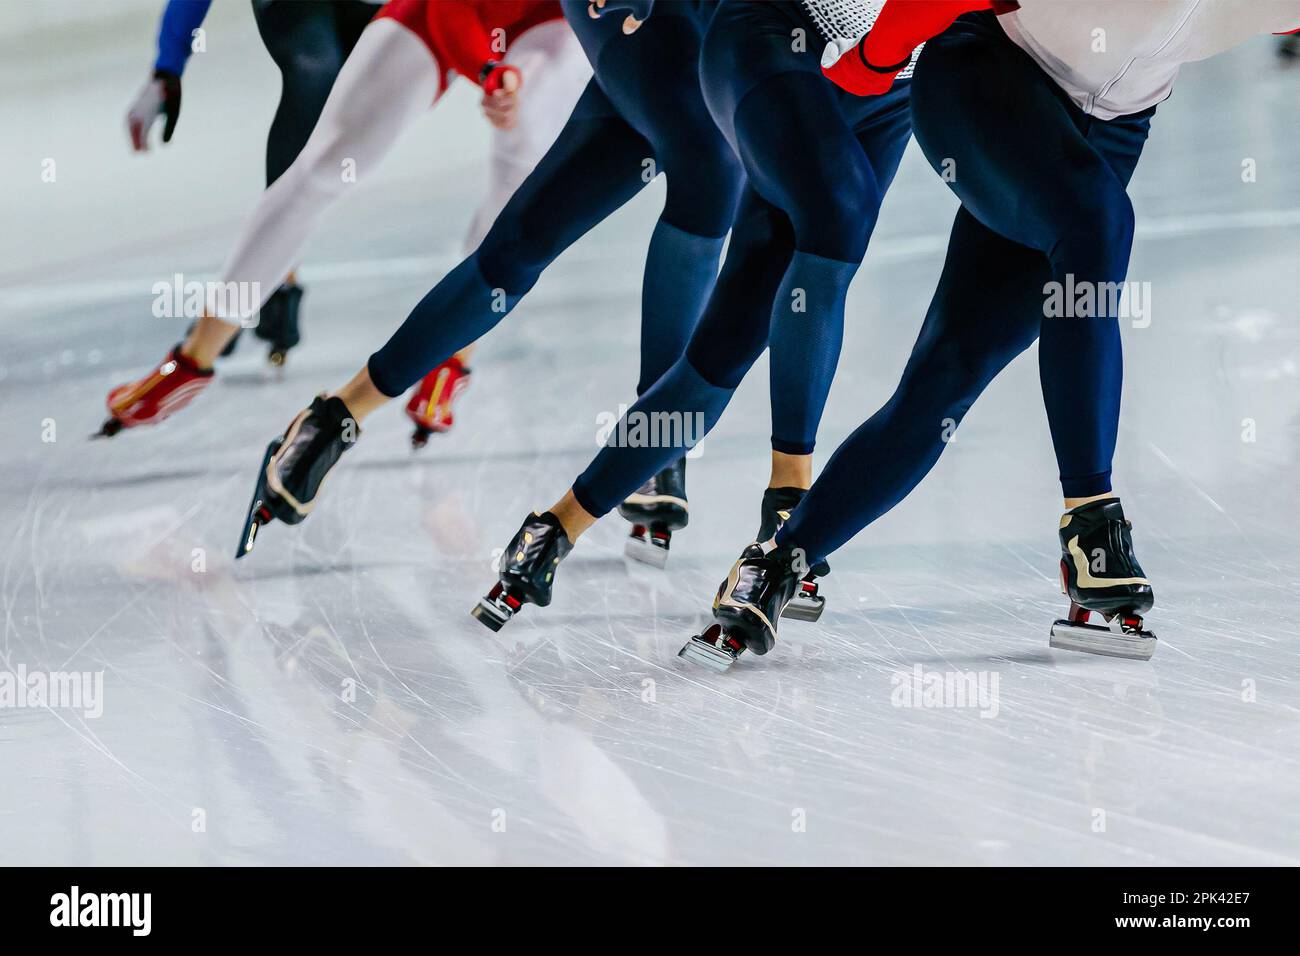 les jambes des patineurs mâles font de la compétition de patinage de vitesse de départ en masse, des jeux de sports d'hiver Banque D'Images